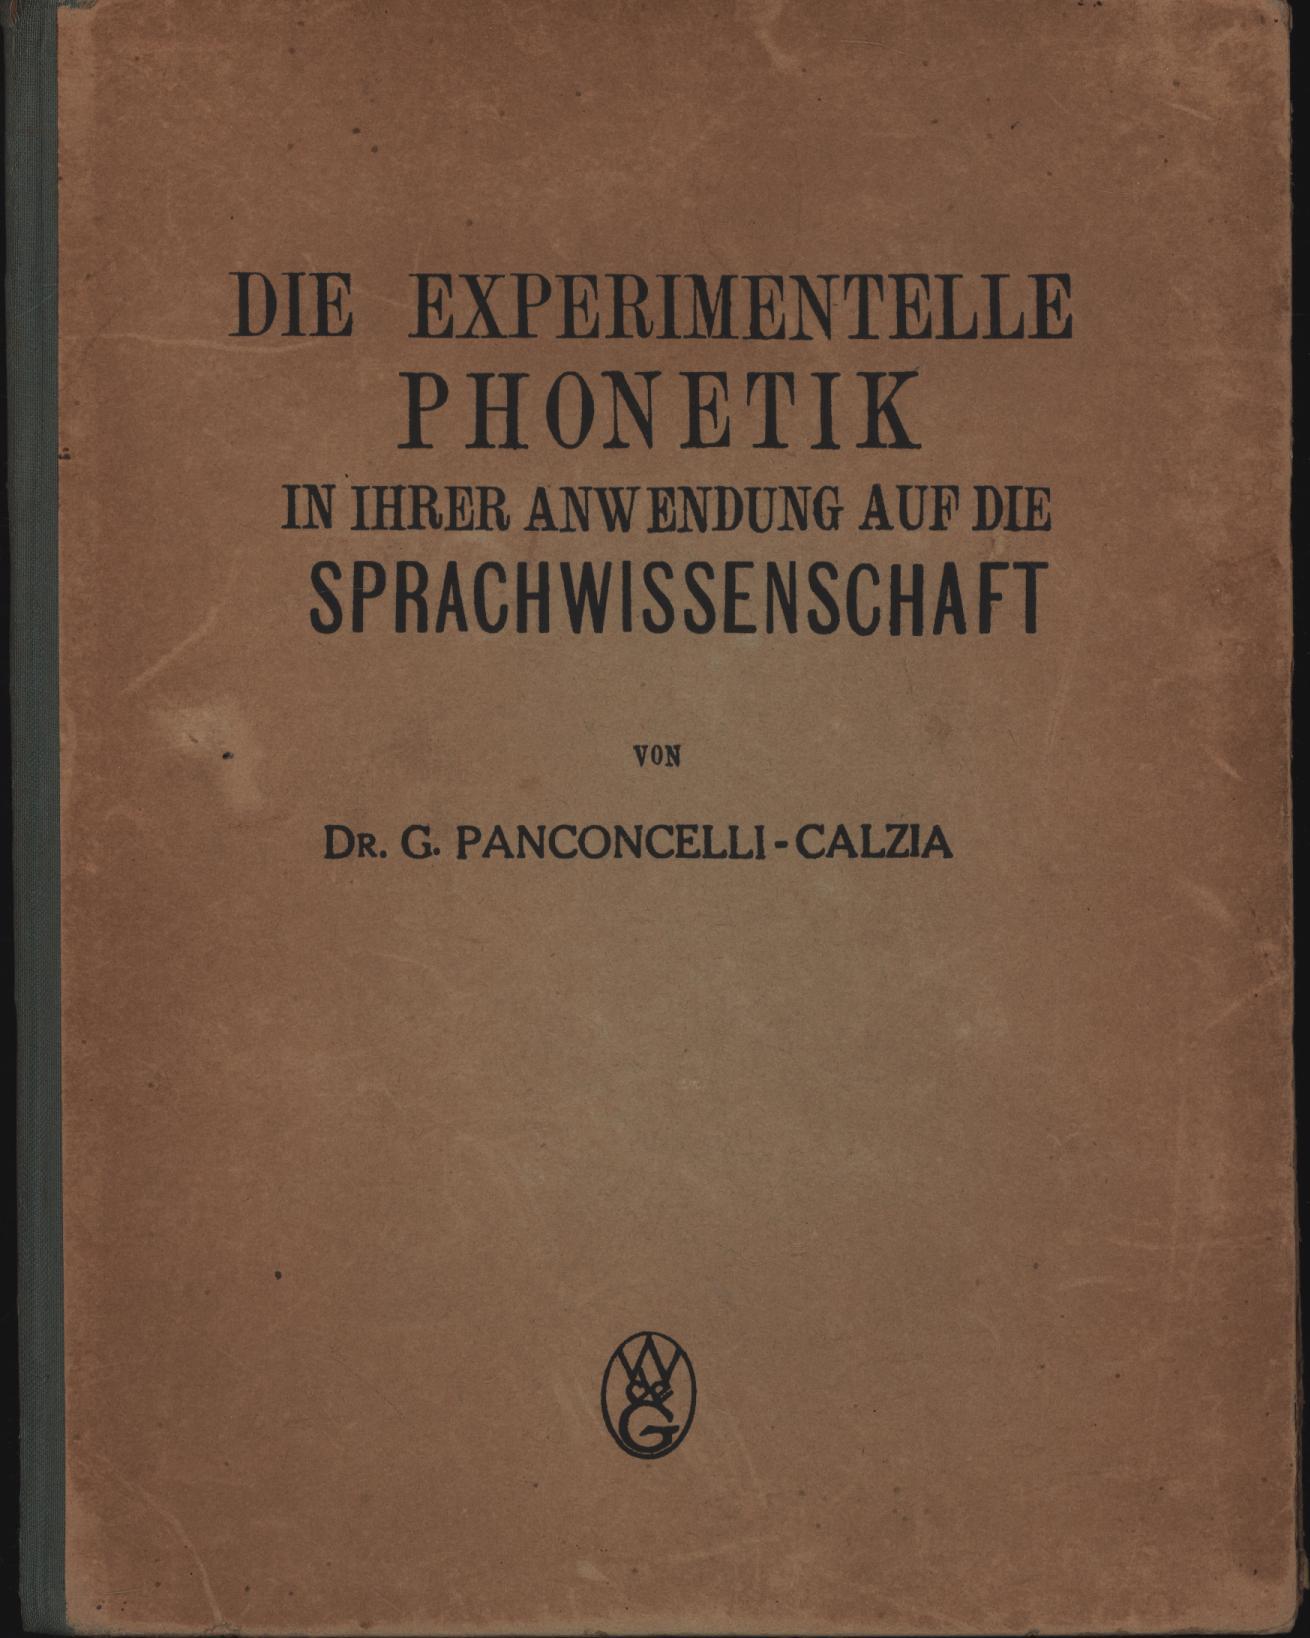 Die experimentelle Phonetik in ihrer Anwendung auf die Sprachwissenschaft - Panconcelli-Calzia, Prof. für Phonetik Dr. G.